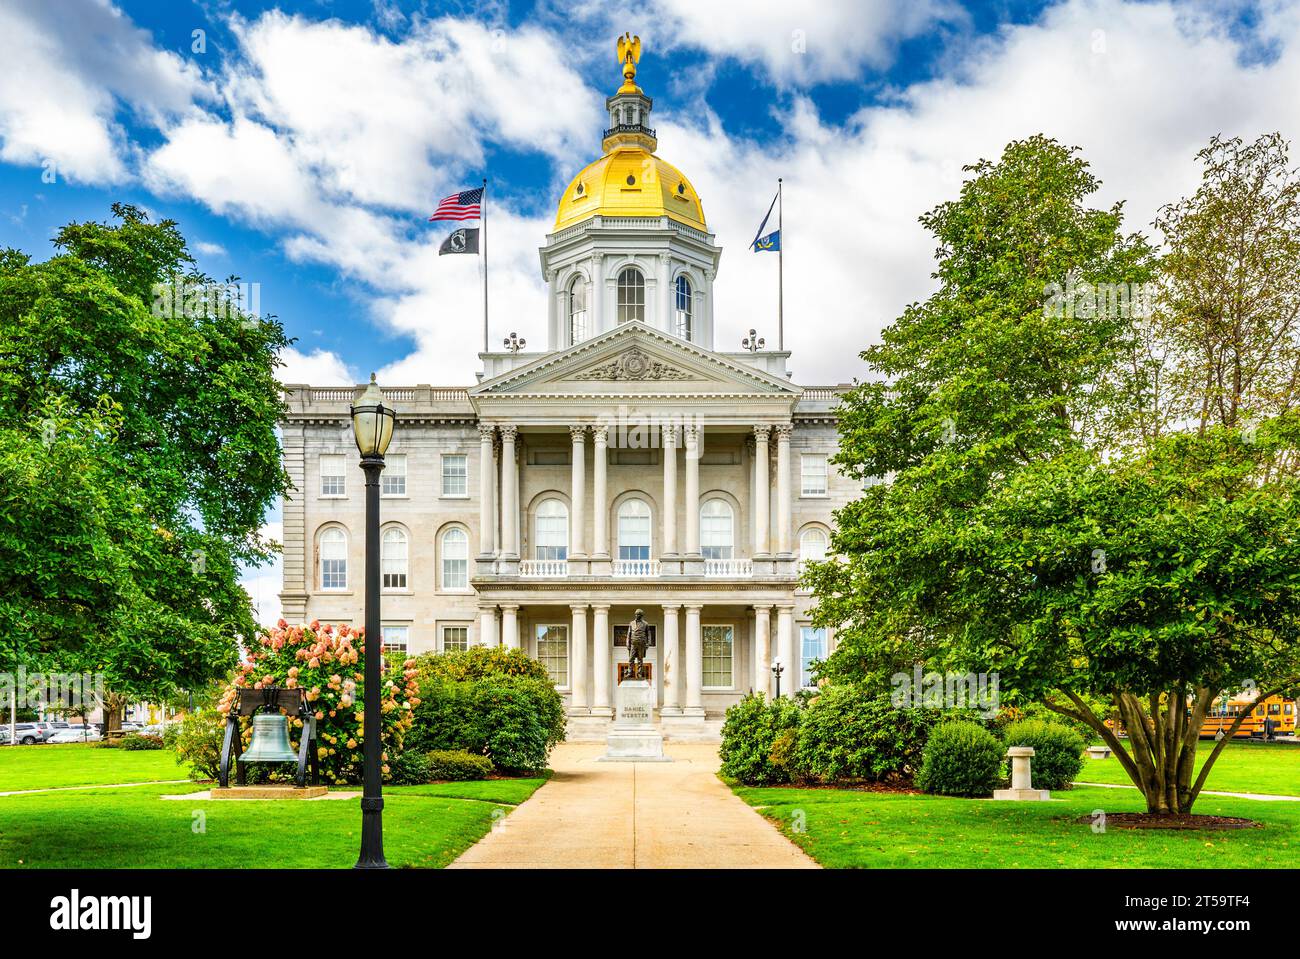 New Hampshire State House, a Concord, in una mattinata di sole. Il campidoglio ospita la Corte generale del New Hampshire, il Governatore e il Consiglio Esecutivo. Foto Stock